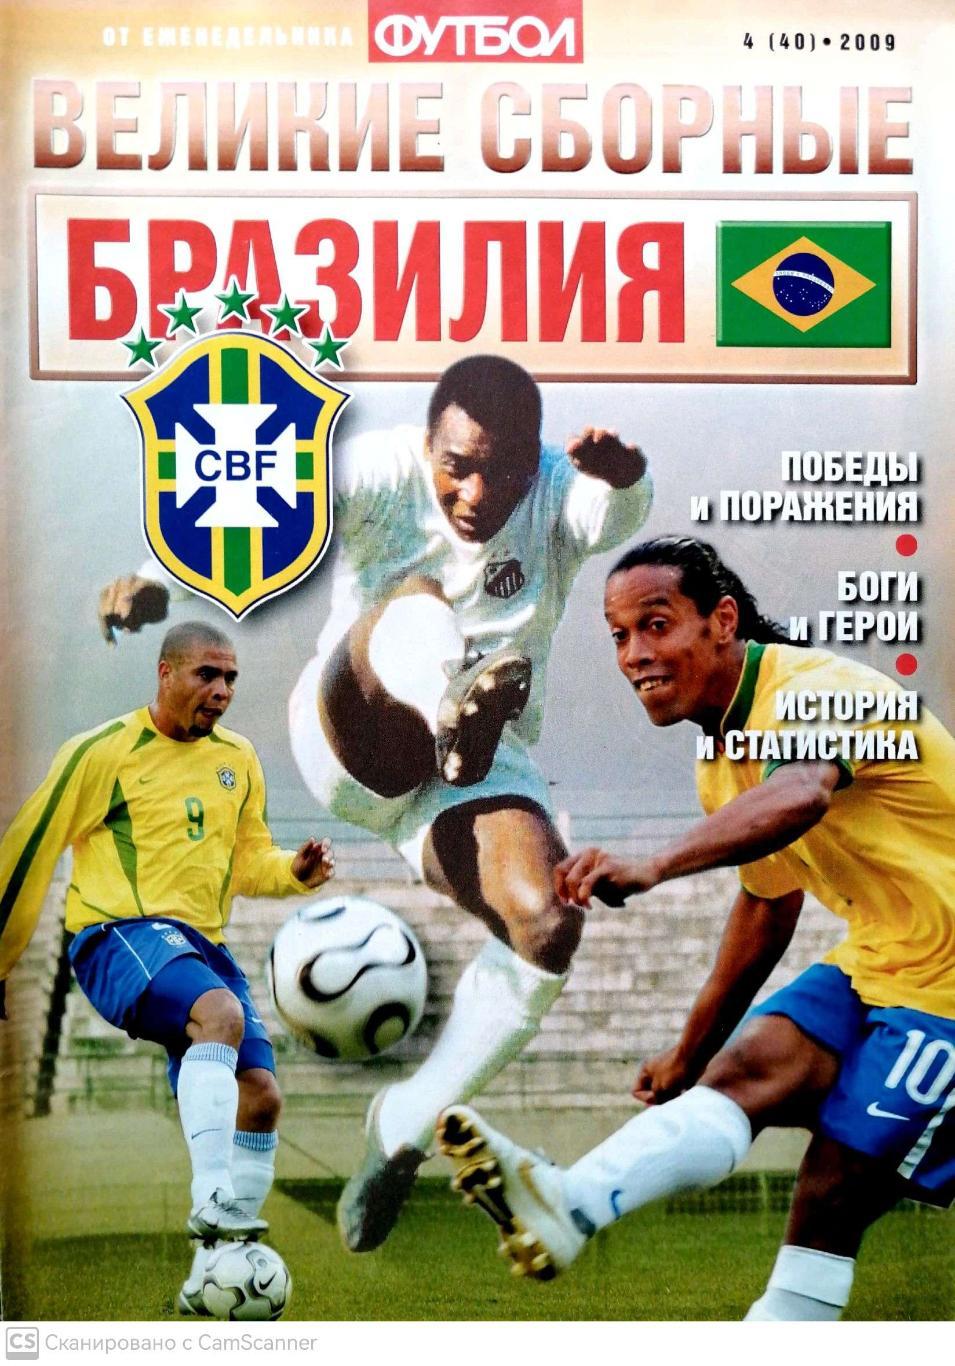 От еженедельника Футбол. Великие сборные. Бразилия 2009 №04 (40) . 32 стр